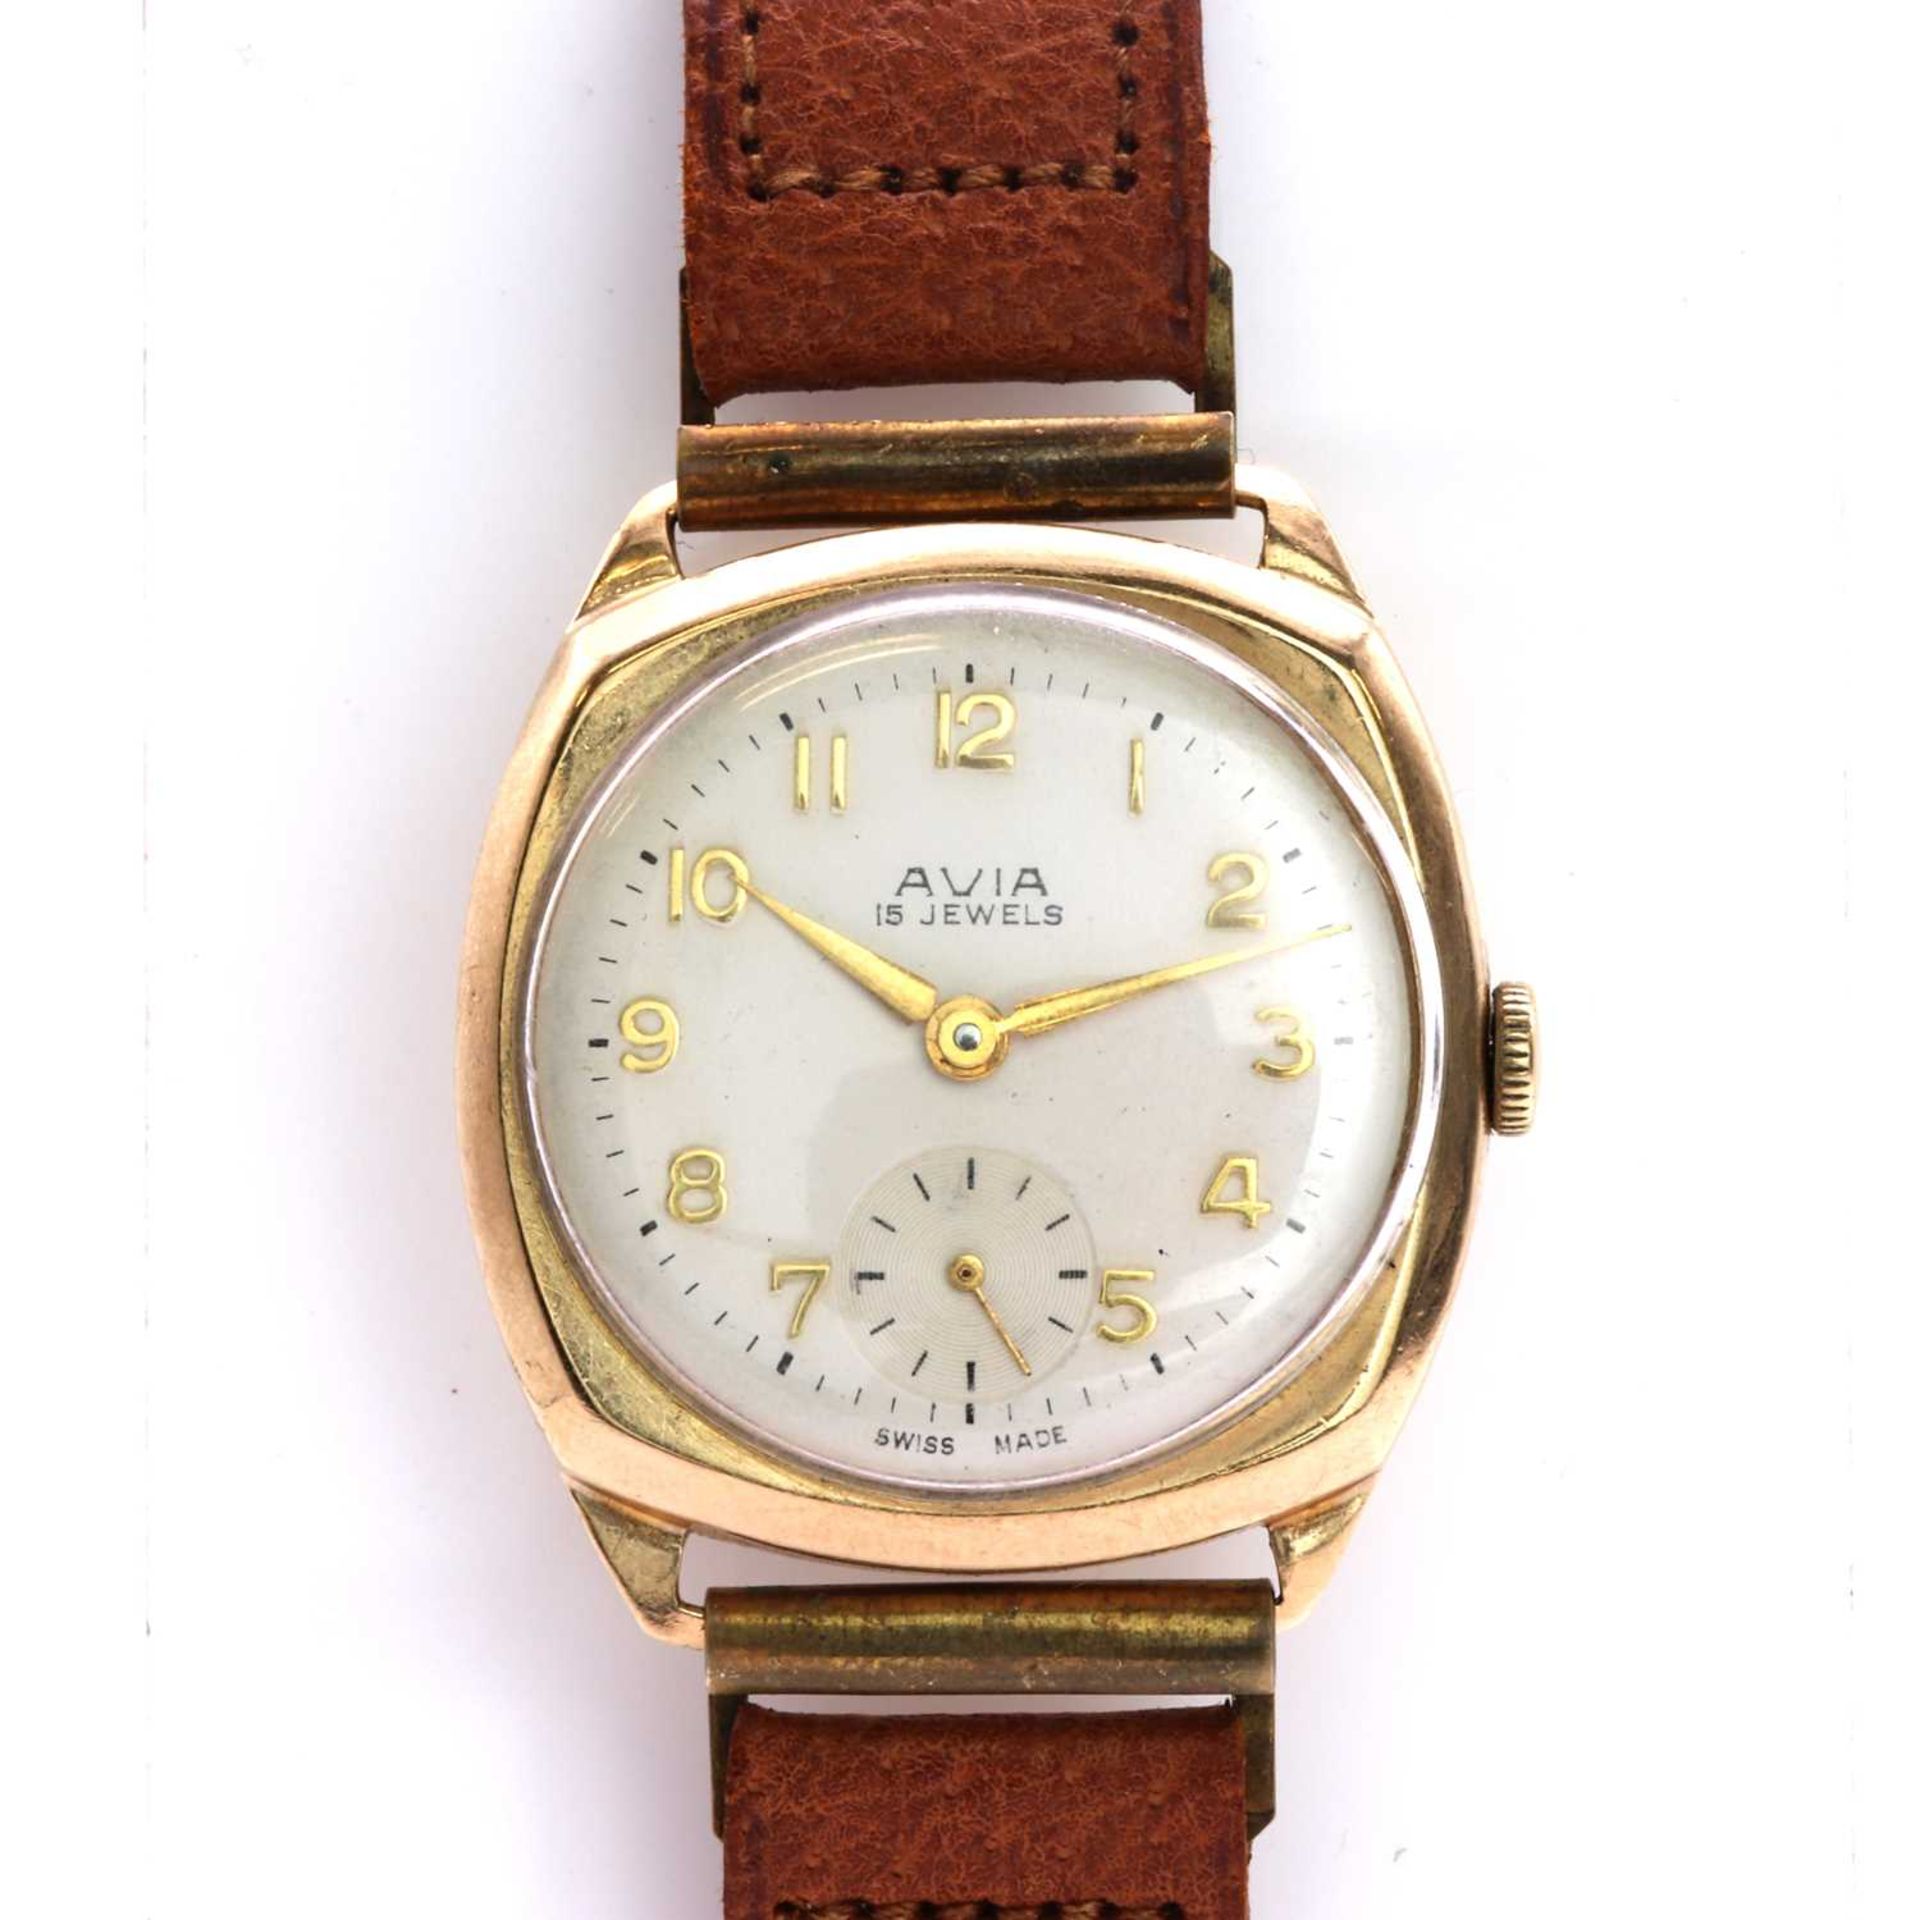 A Gentlemen's 9ct gold Avia mechanical strap watch,